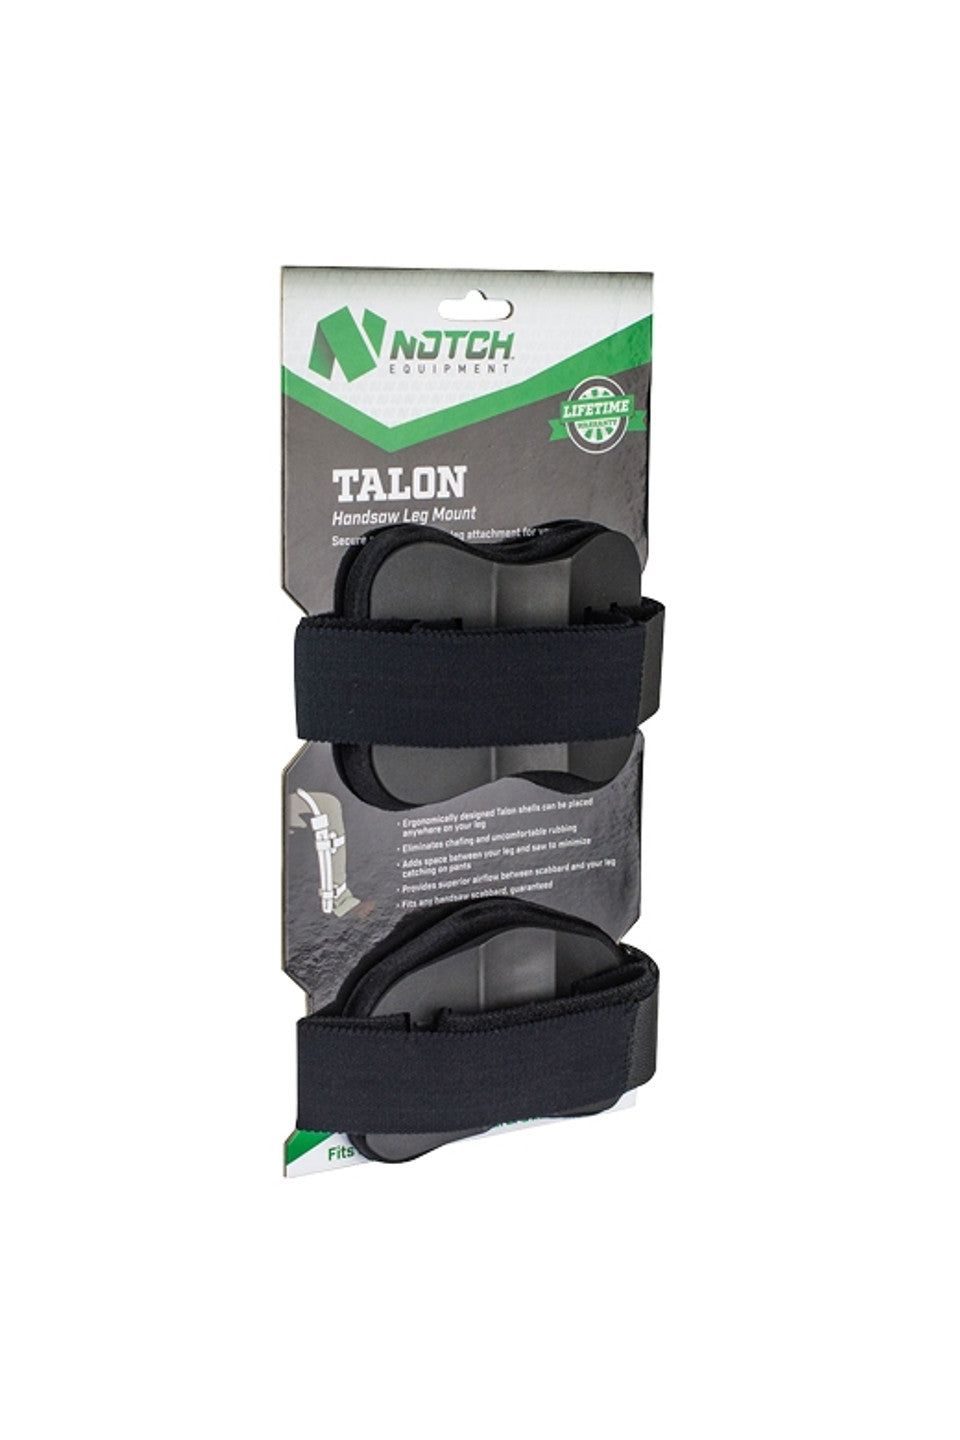 Notch Talon håndsagholder leggmontering - Anton's Timber